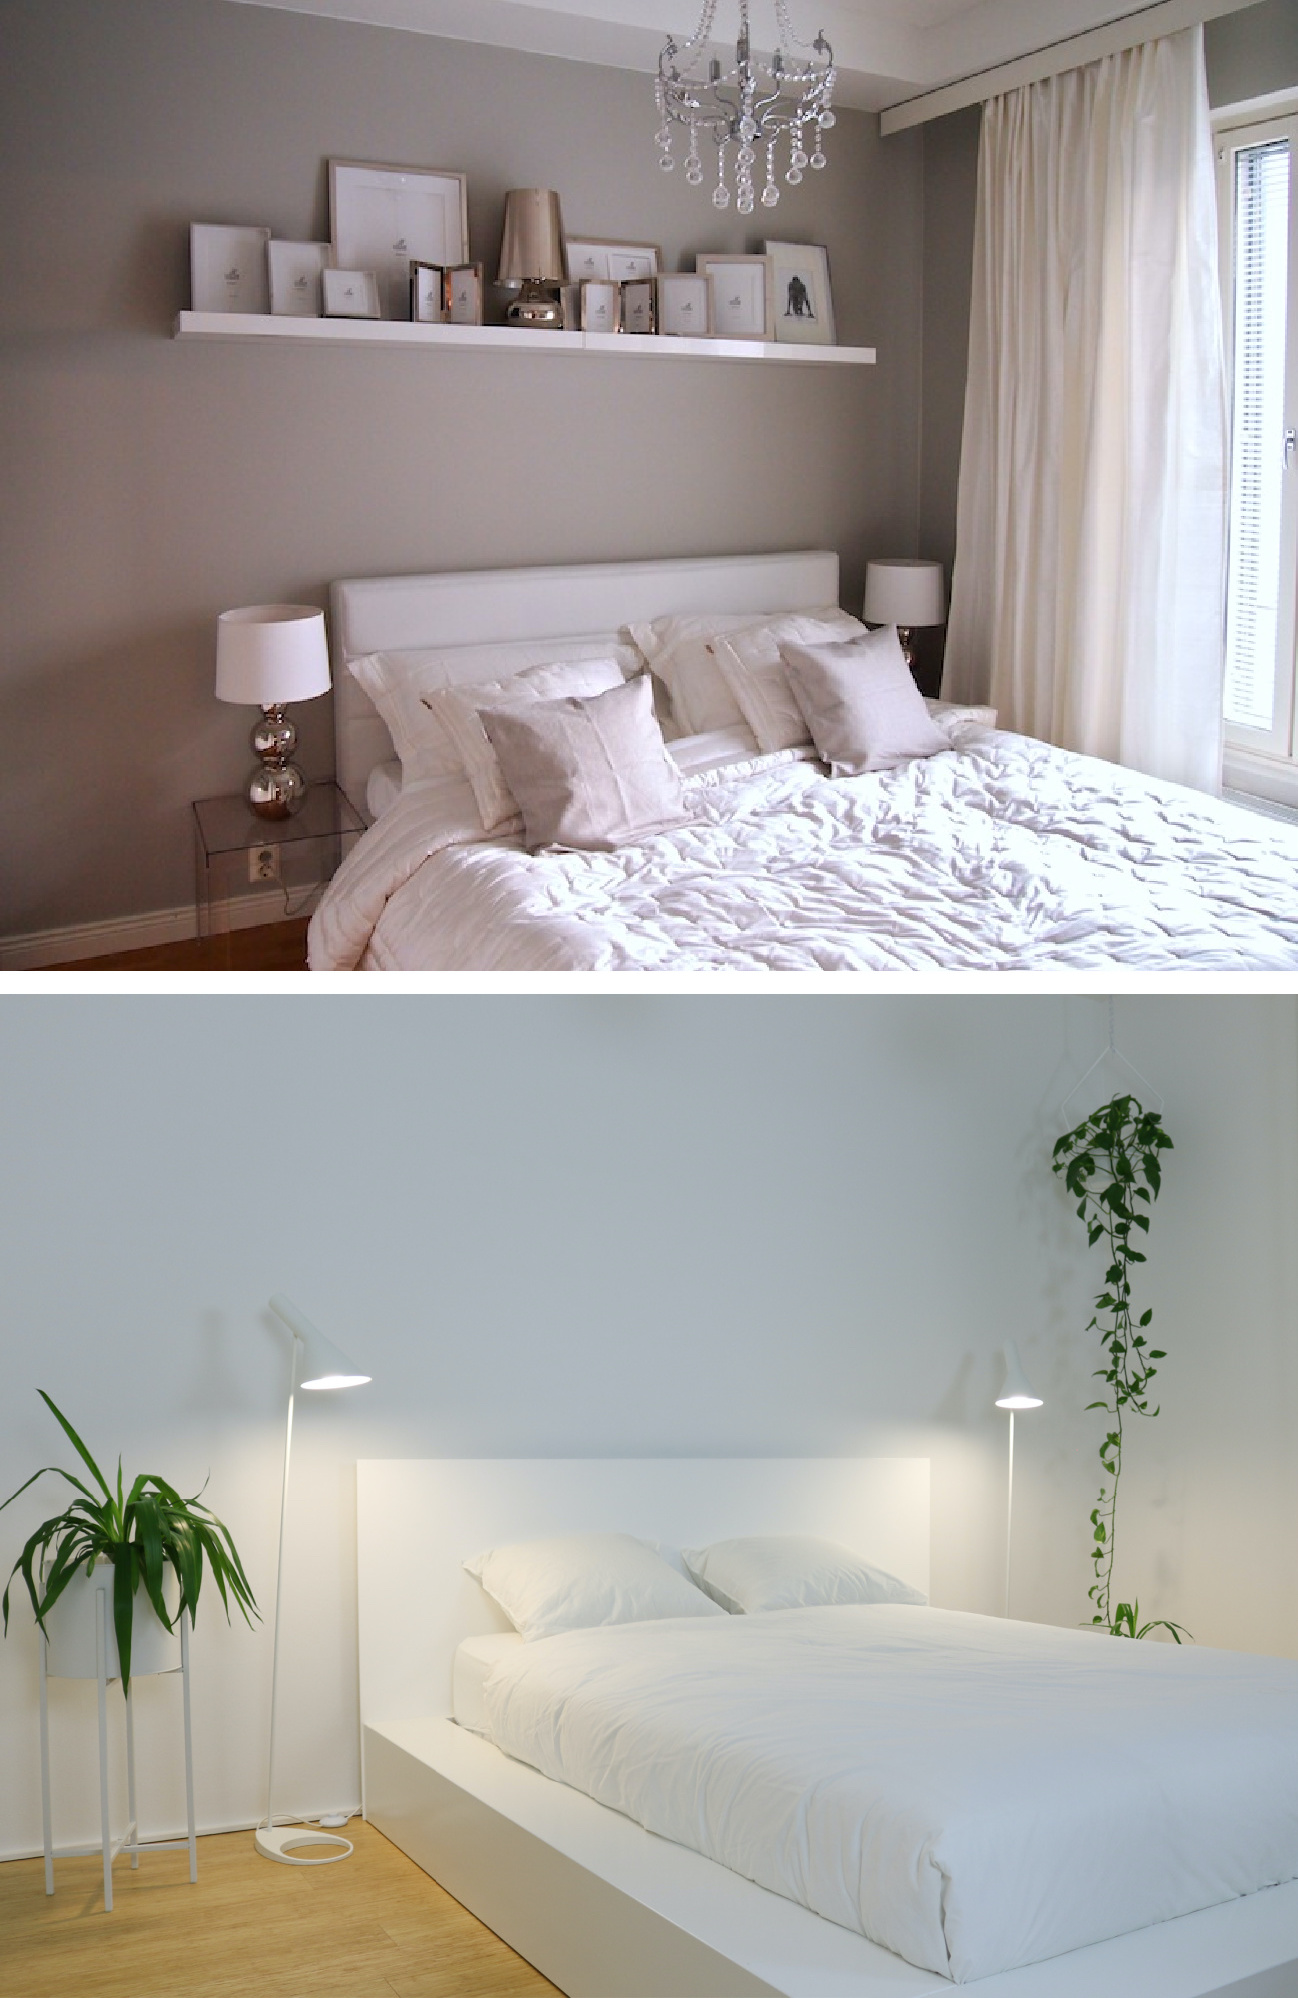 Maalisävy makuuhuoneeseen ennen ja jälkeen kuvia - Sisustusblogi Omakotivalkoinen